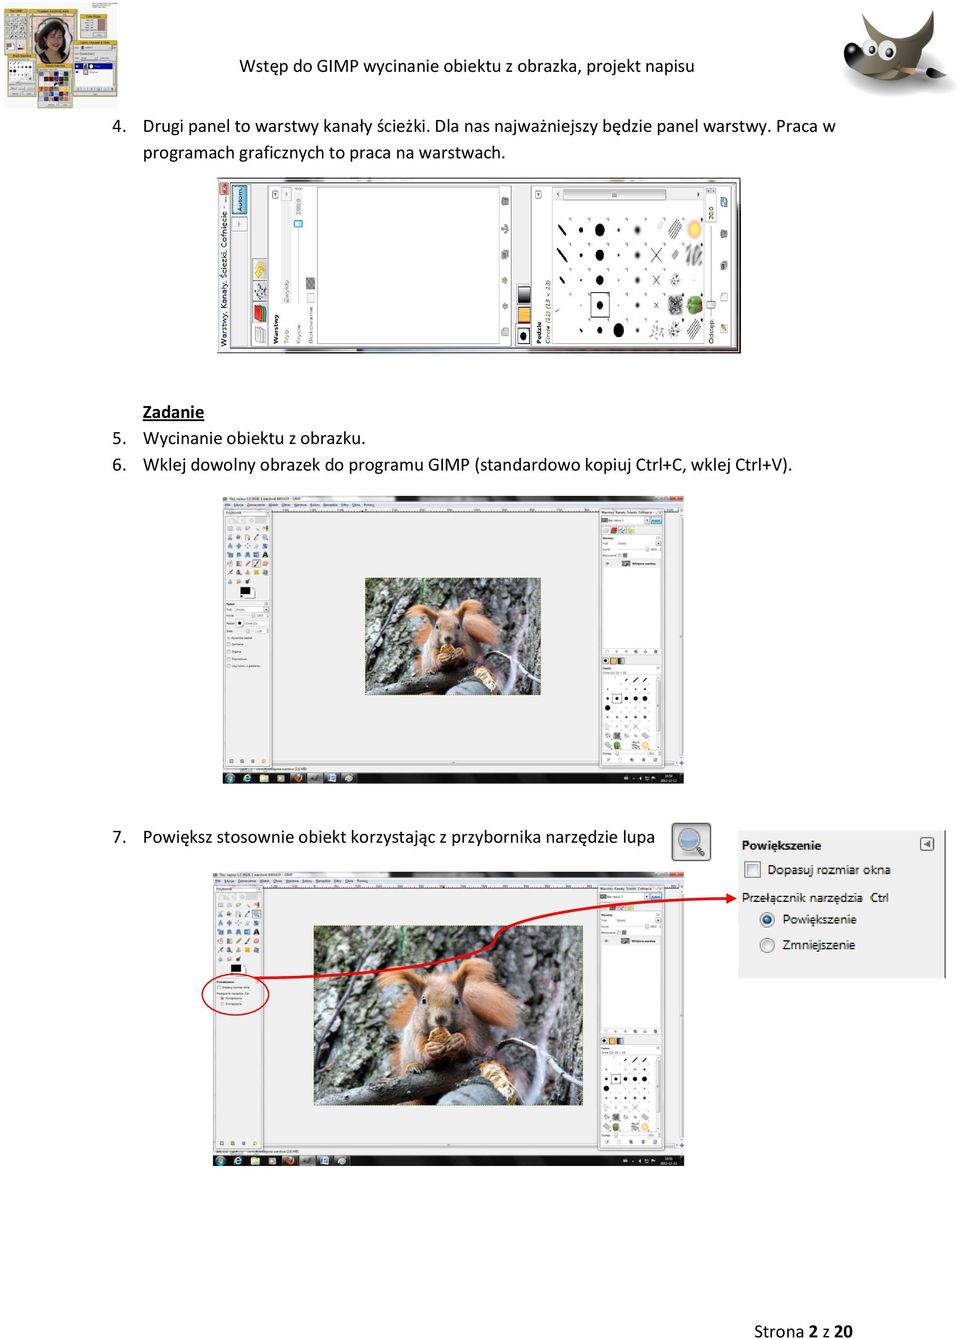 Wstęp do GIMP wycinanie obiektu z obrazka, projekt napisu. Rozpoczynamy  prace w GIMP-e - PDF Darmowe pobieranie